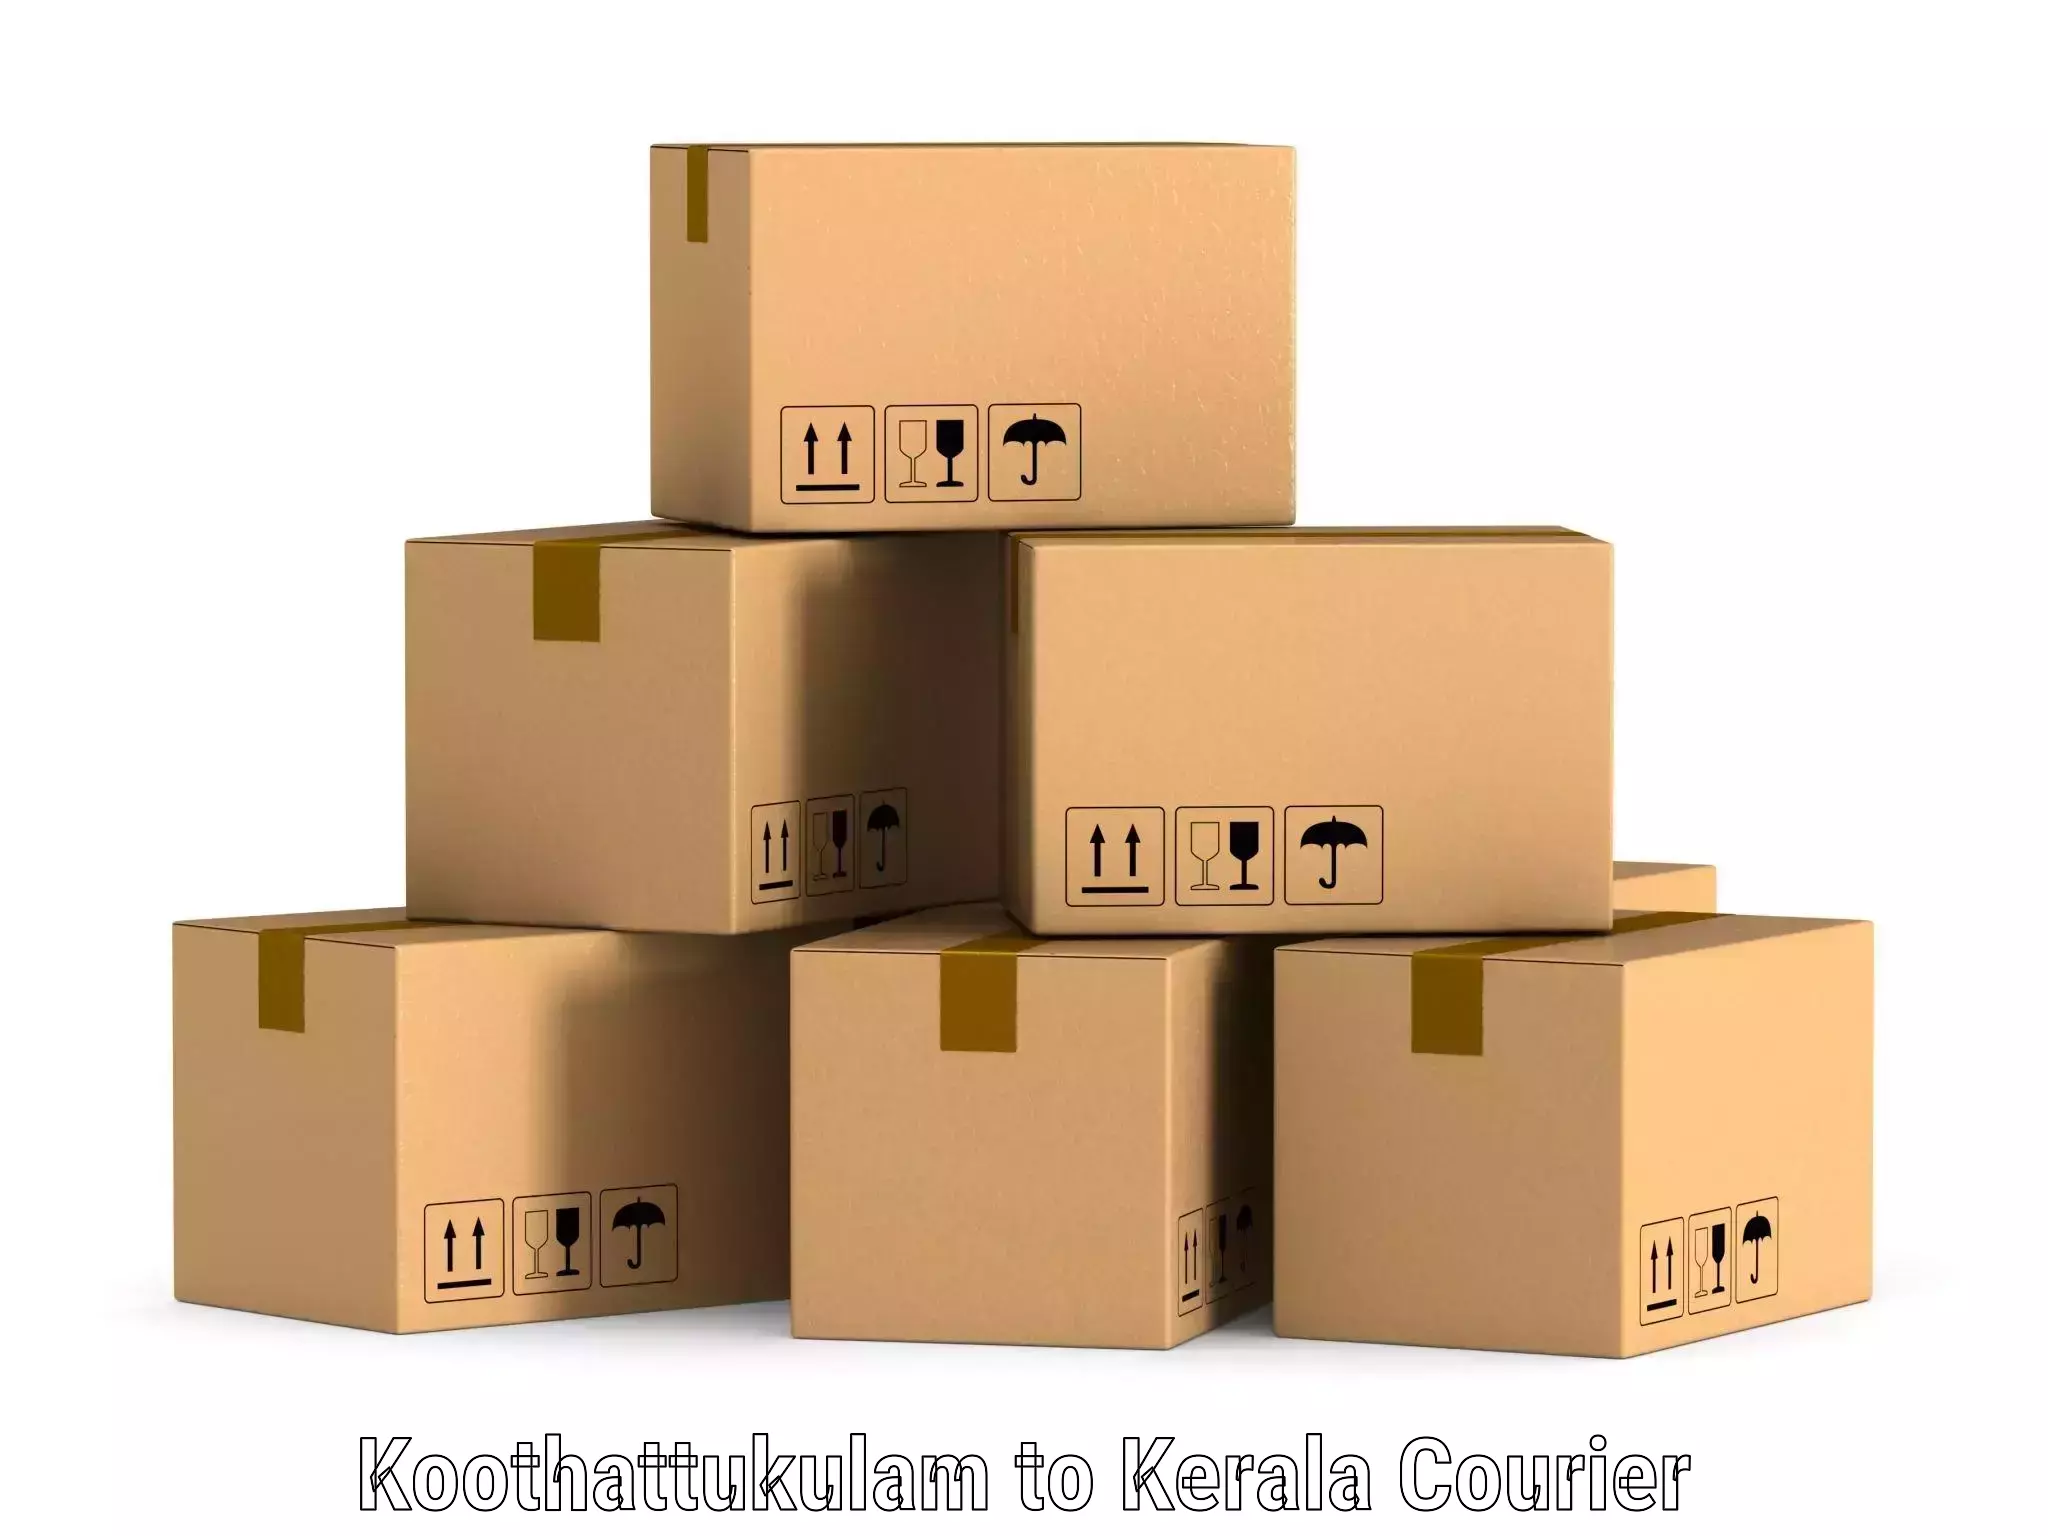 Affordable logistics services Koothattukulam to IIIT Kottayam